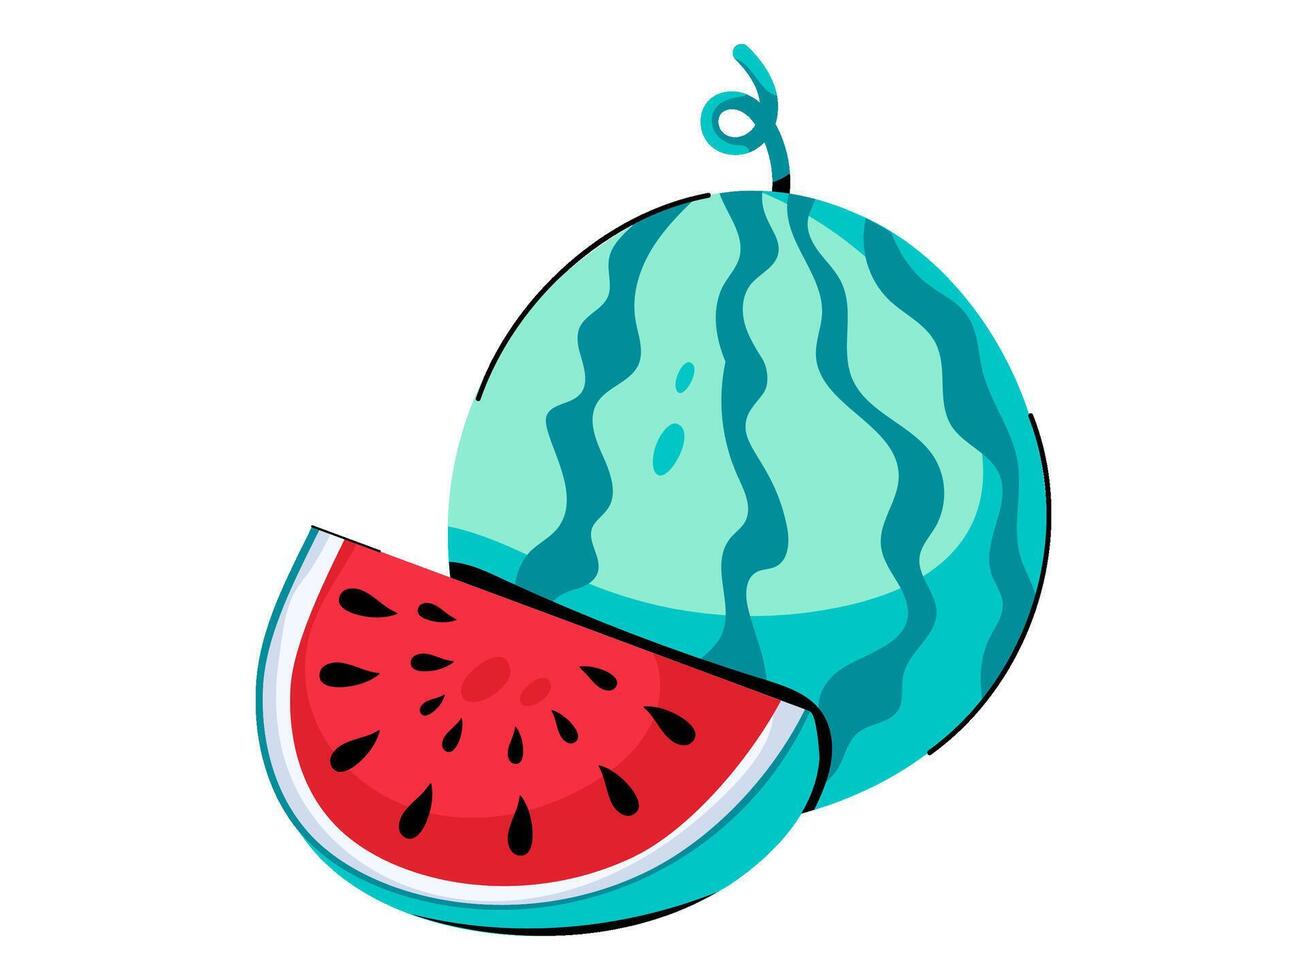 watermeloen ontwerp met modern illustratie concept stijl voor insigne boerderij landbouw sticker illustratie vector